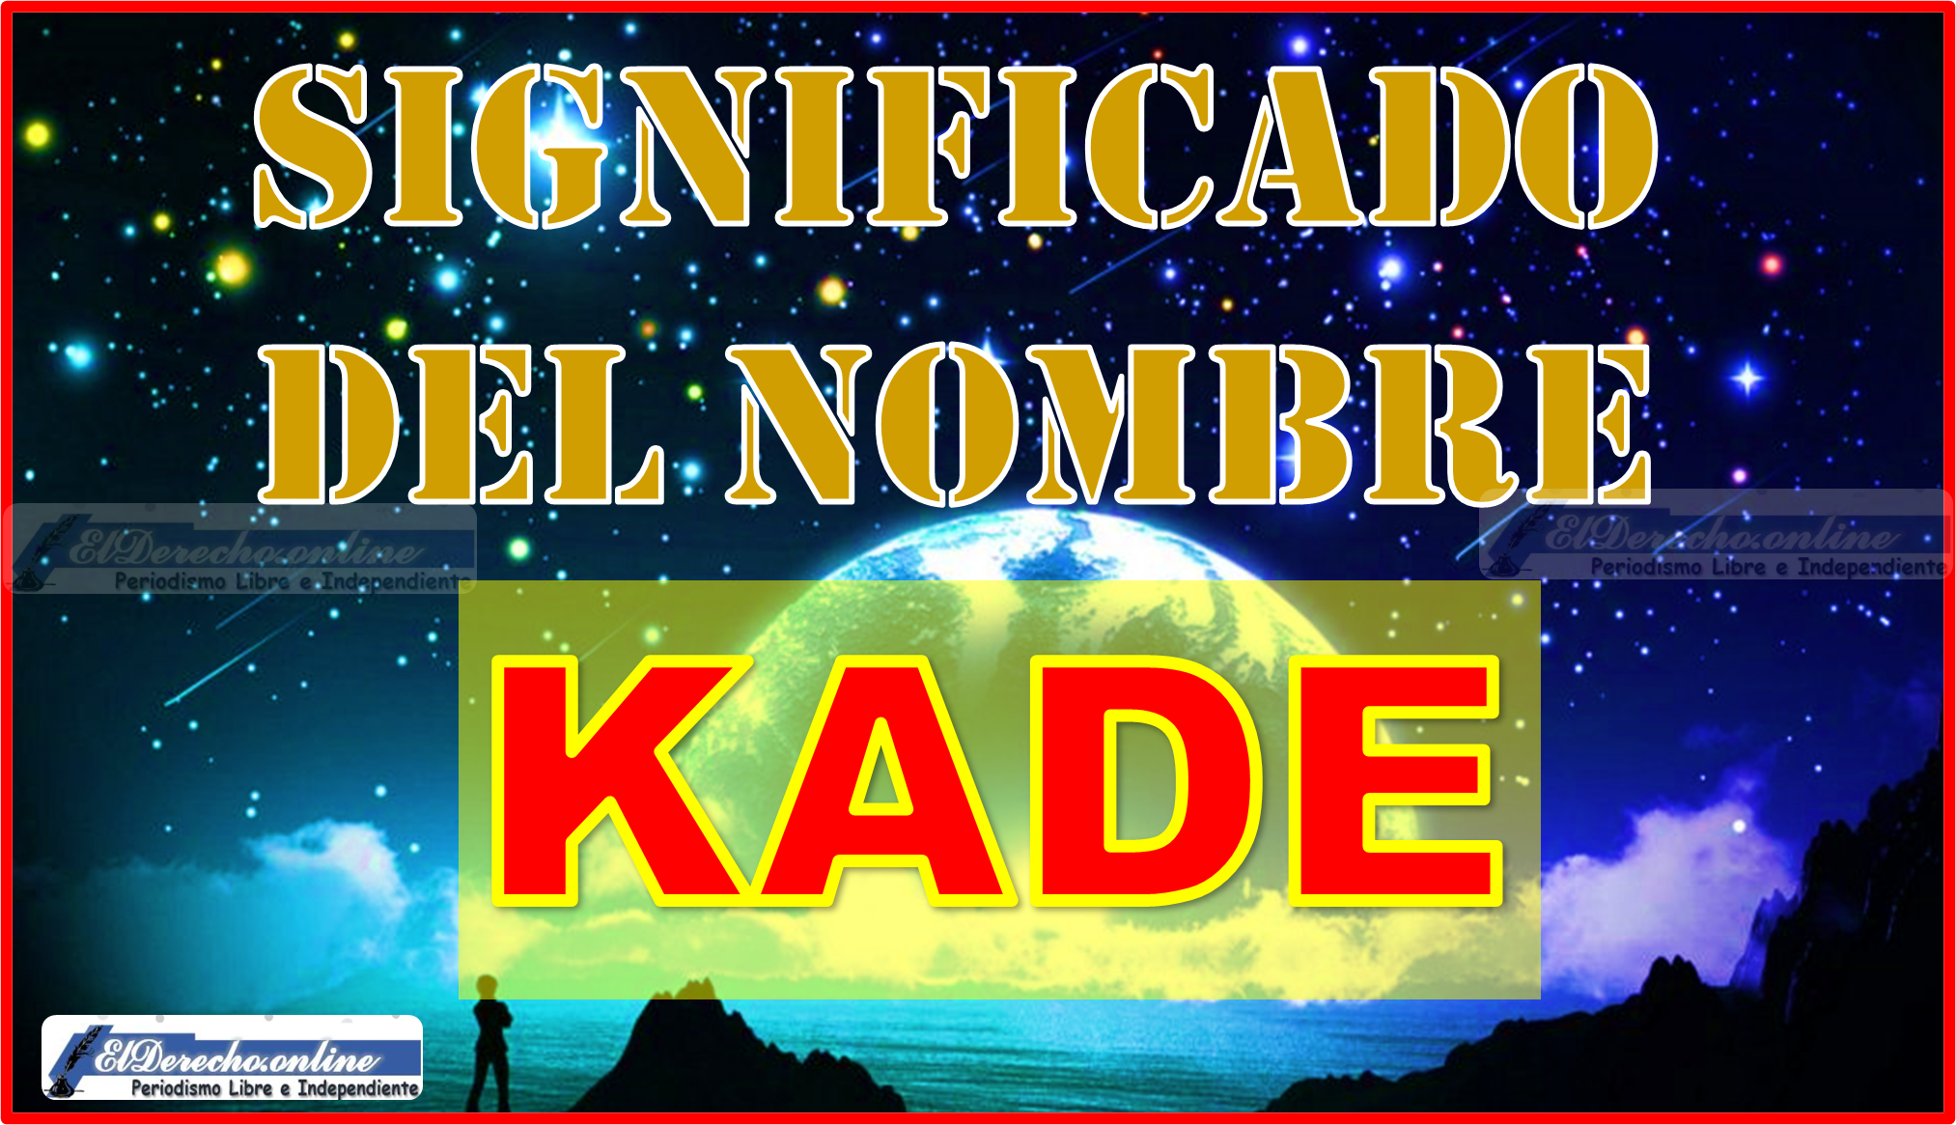 Significado del nombre Kade, su origen y más